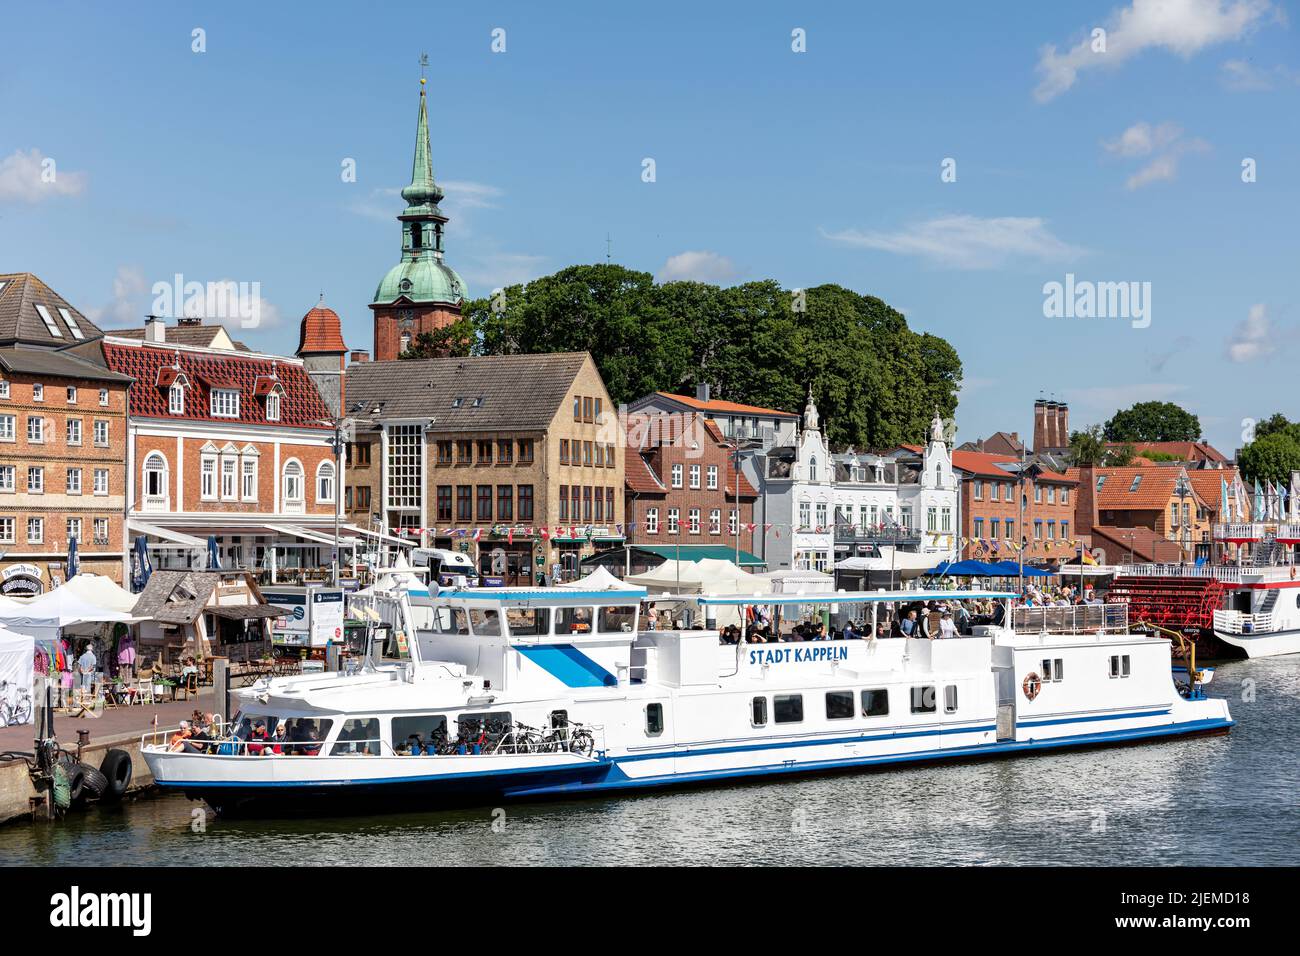 Ausflugsboot STADT KAPPELN in der Stadt Kappeln in Schleswig-Holstein, Deutschland Stockfoto